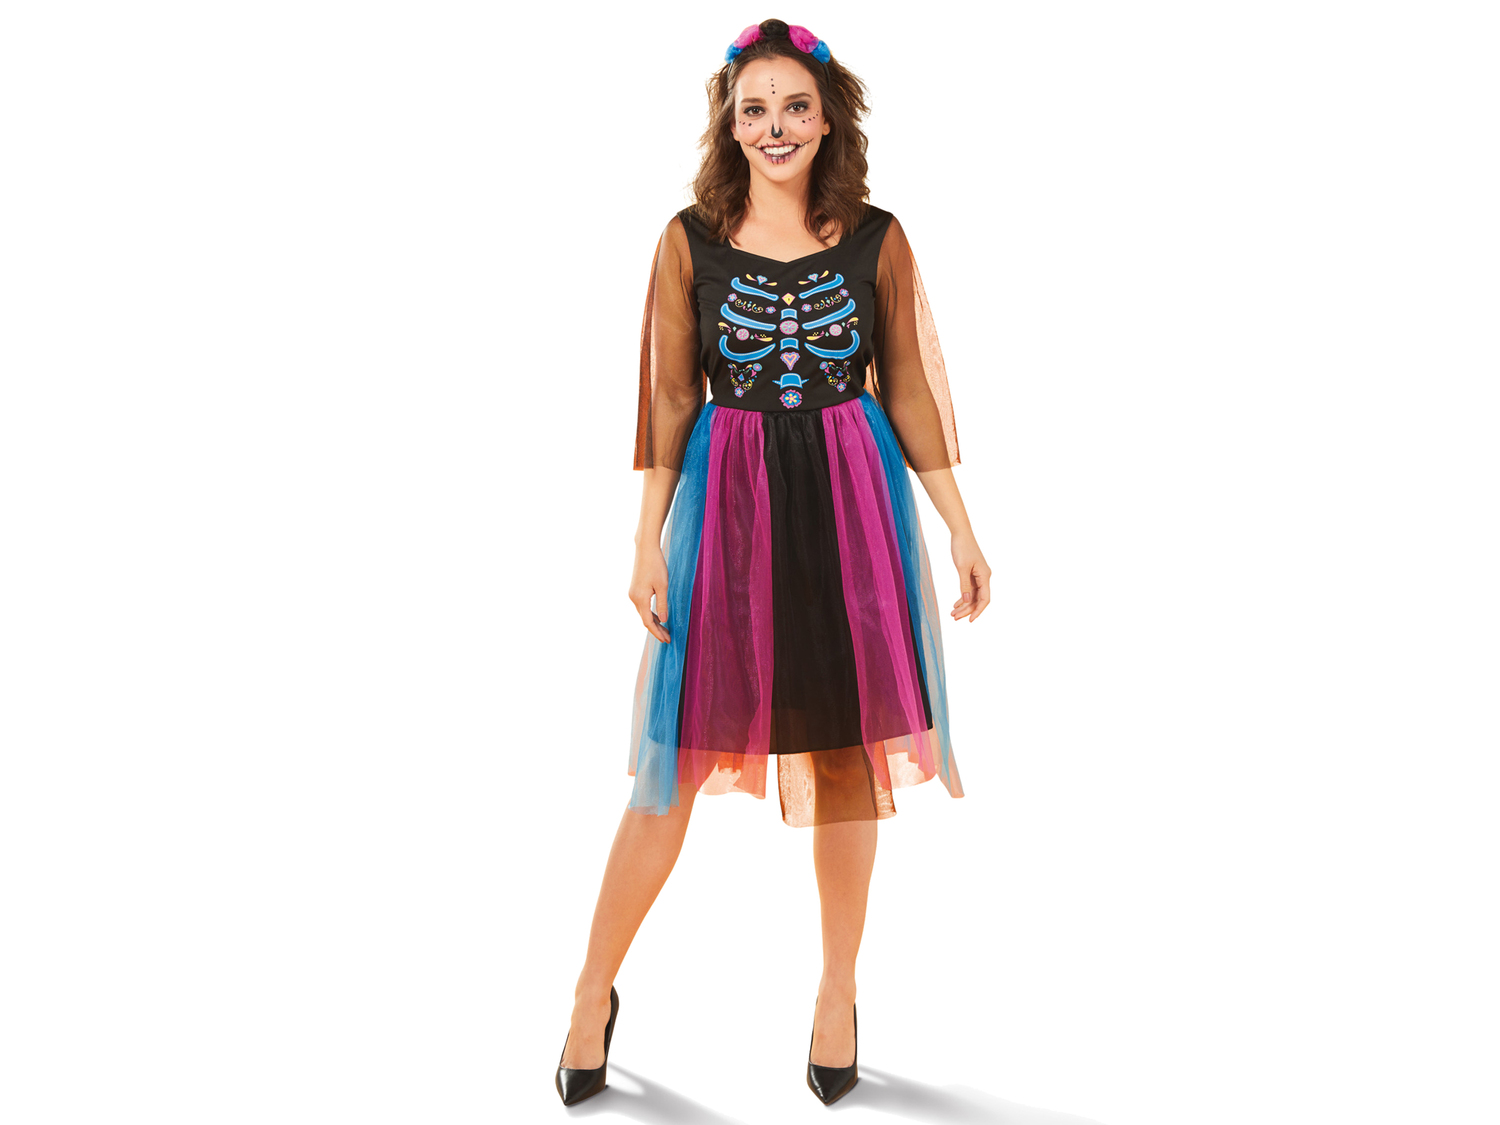 Costume di Halloween per donna Sgs_tuv_saar, prezzo 9.99 &#8364; 
Misure: S-L
Taglie ...